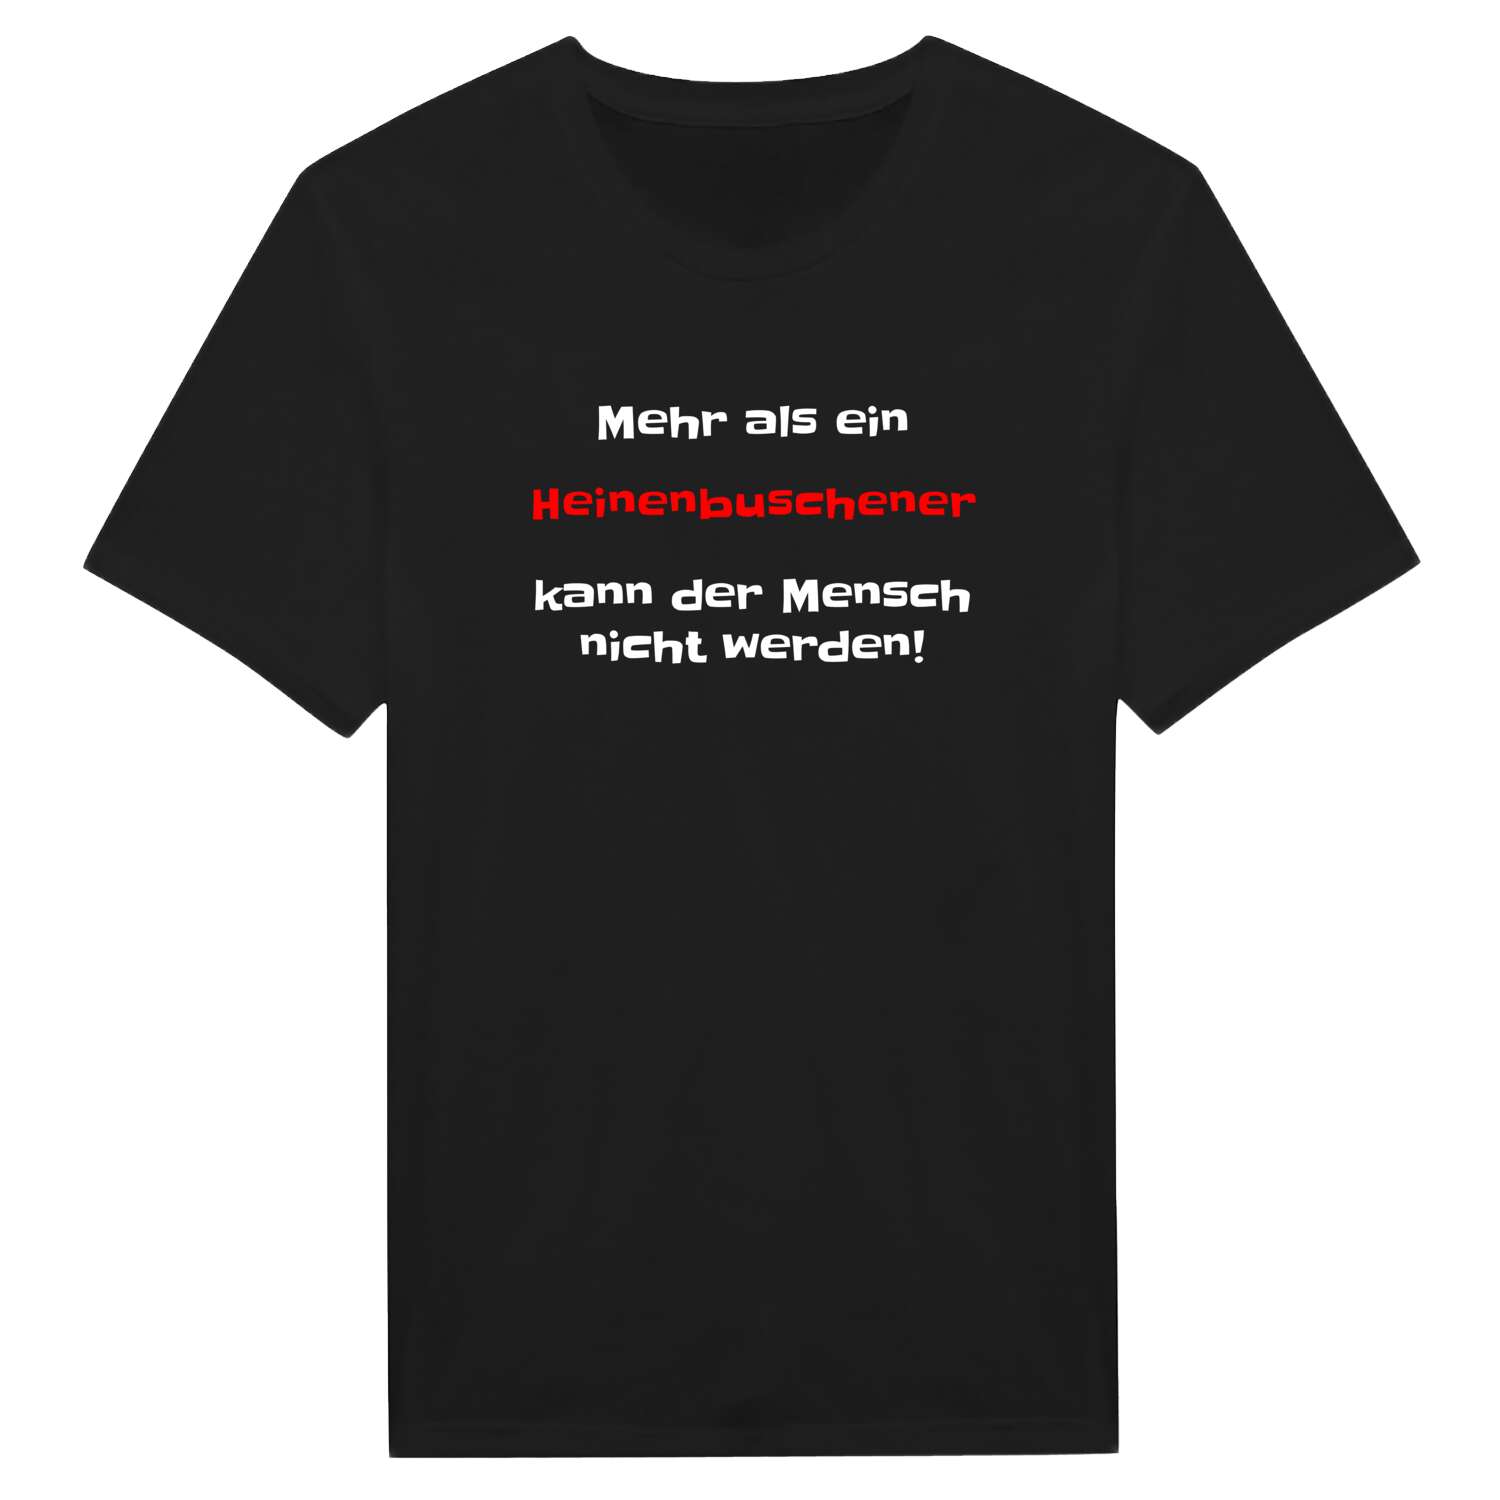 Heinenbusch T-Shirt »Mehr als ein«